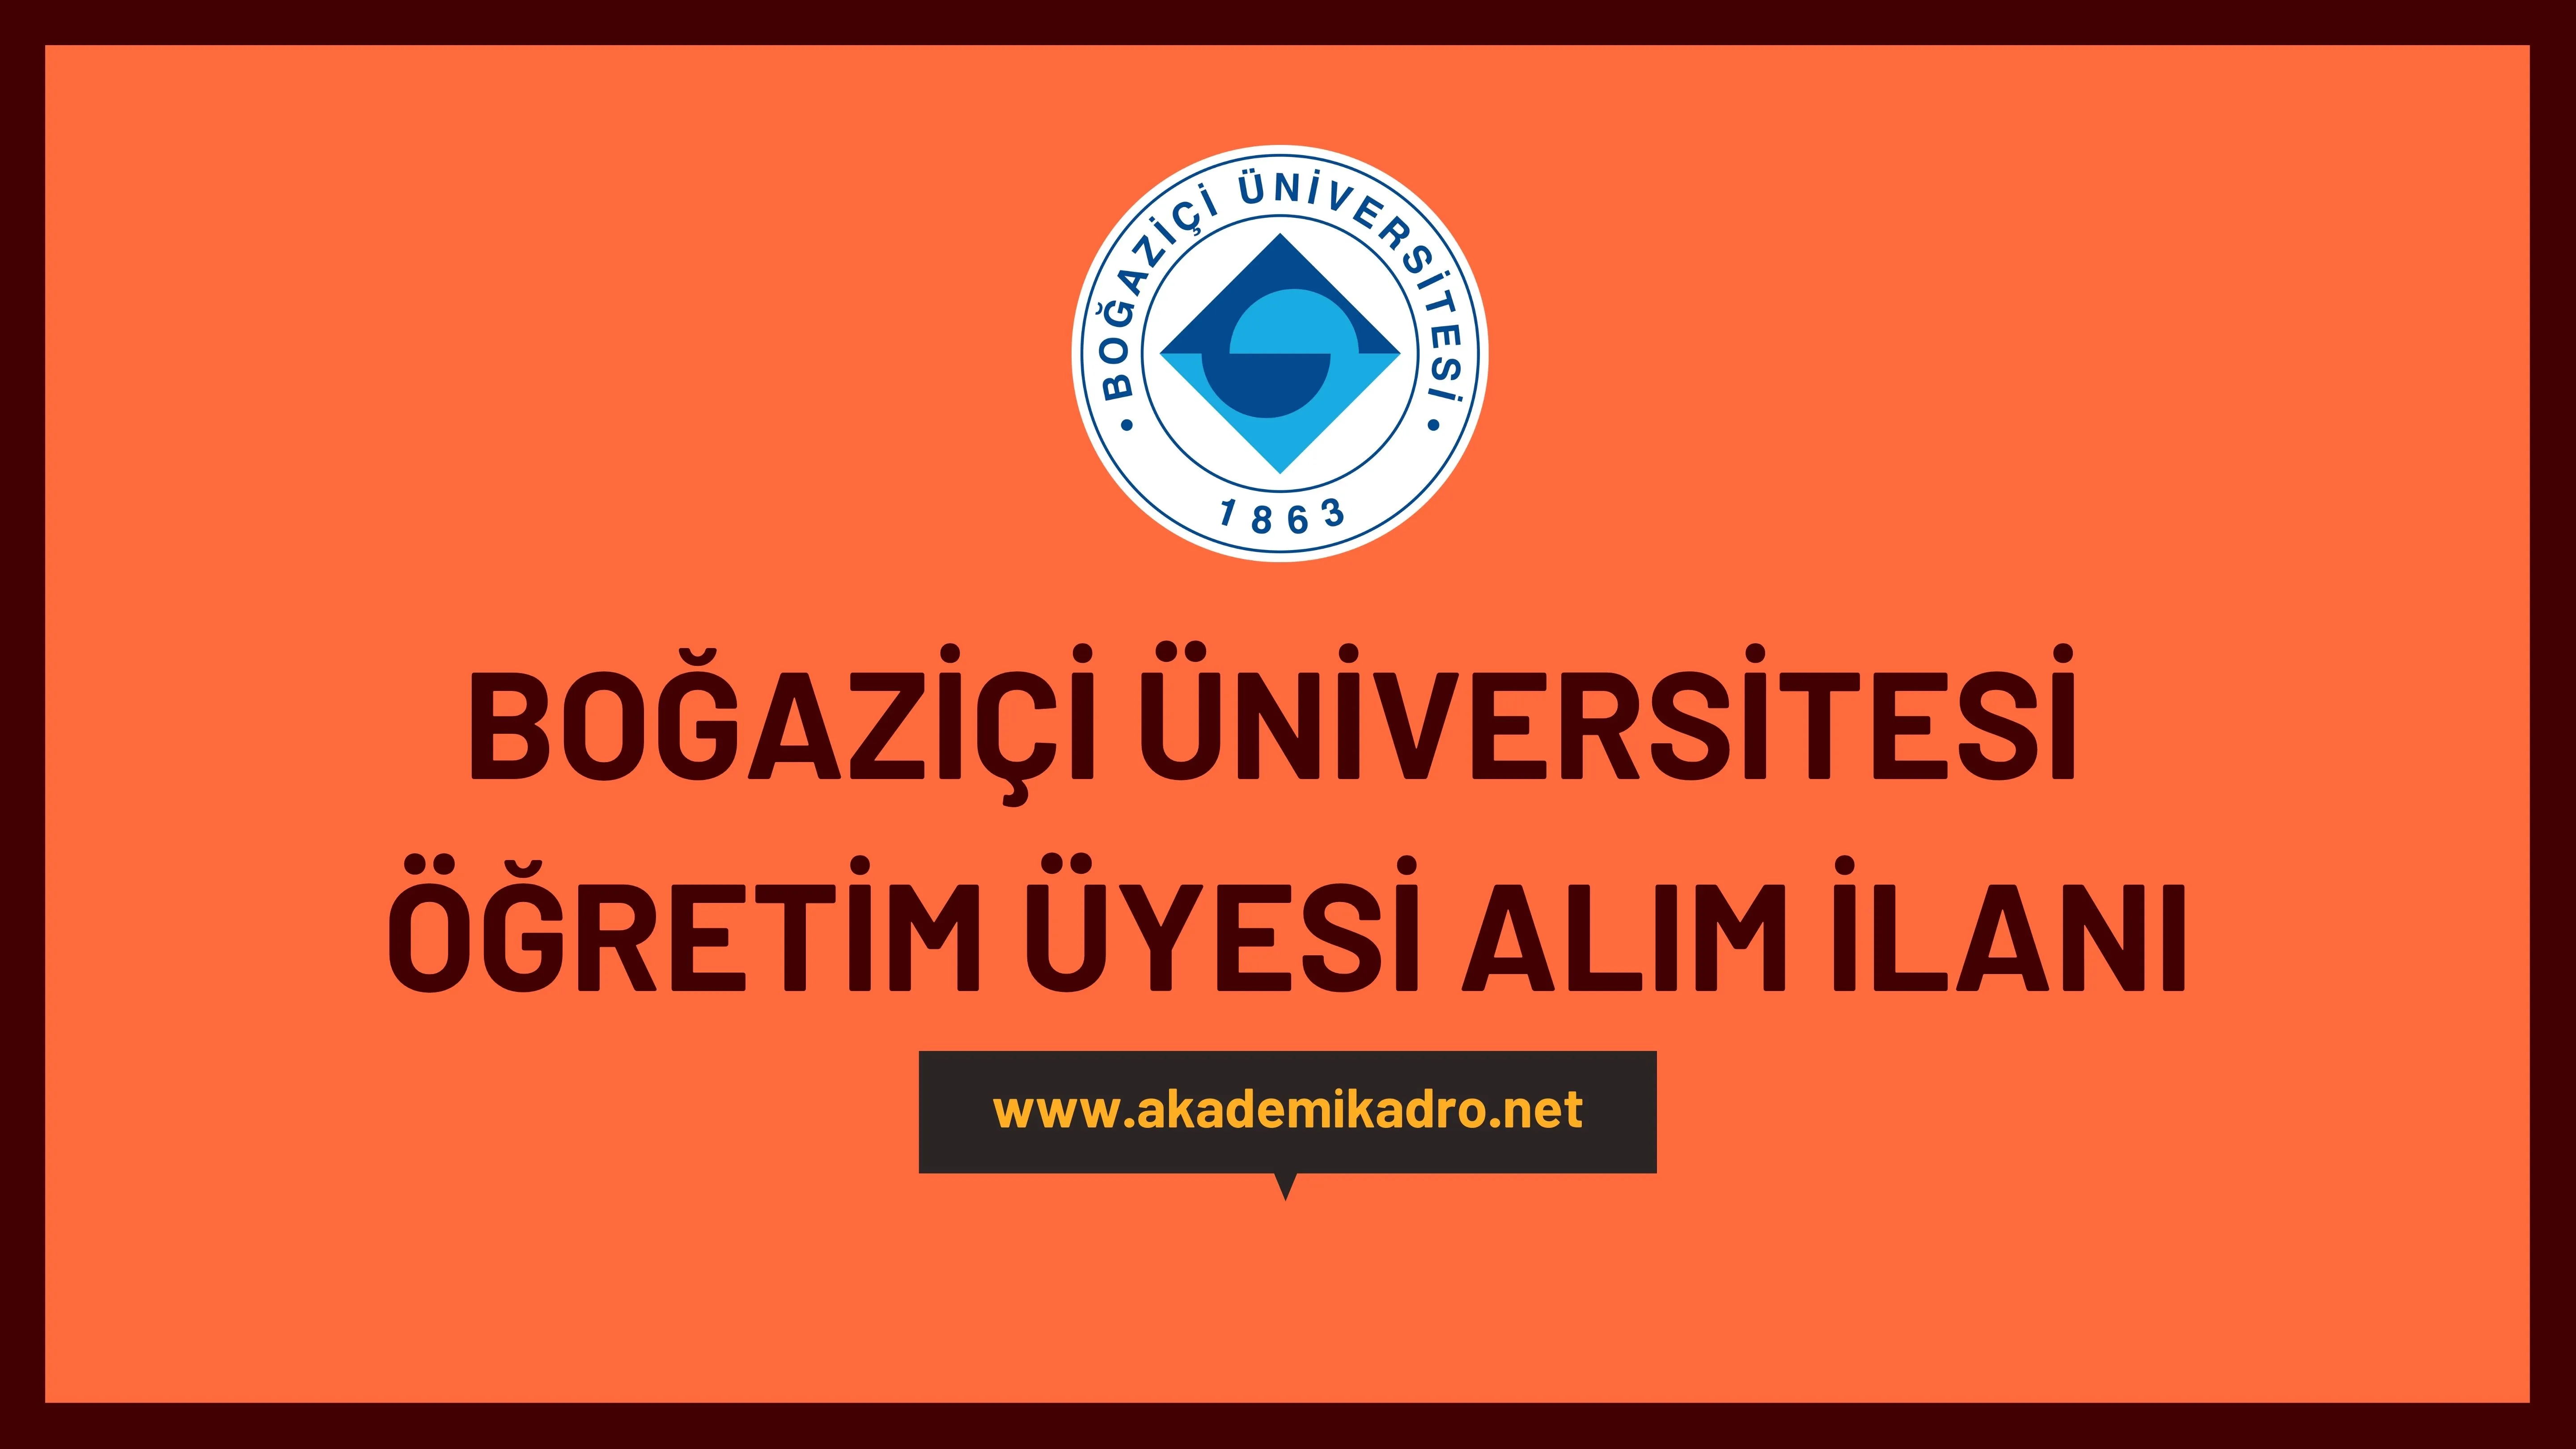 Boğaziçi Üniversitesi çeşitli branşlarda 8 Öğretim üyesi alacak.